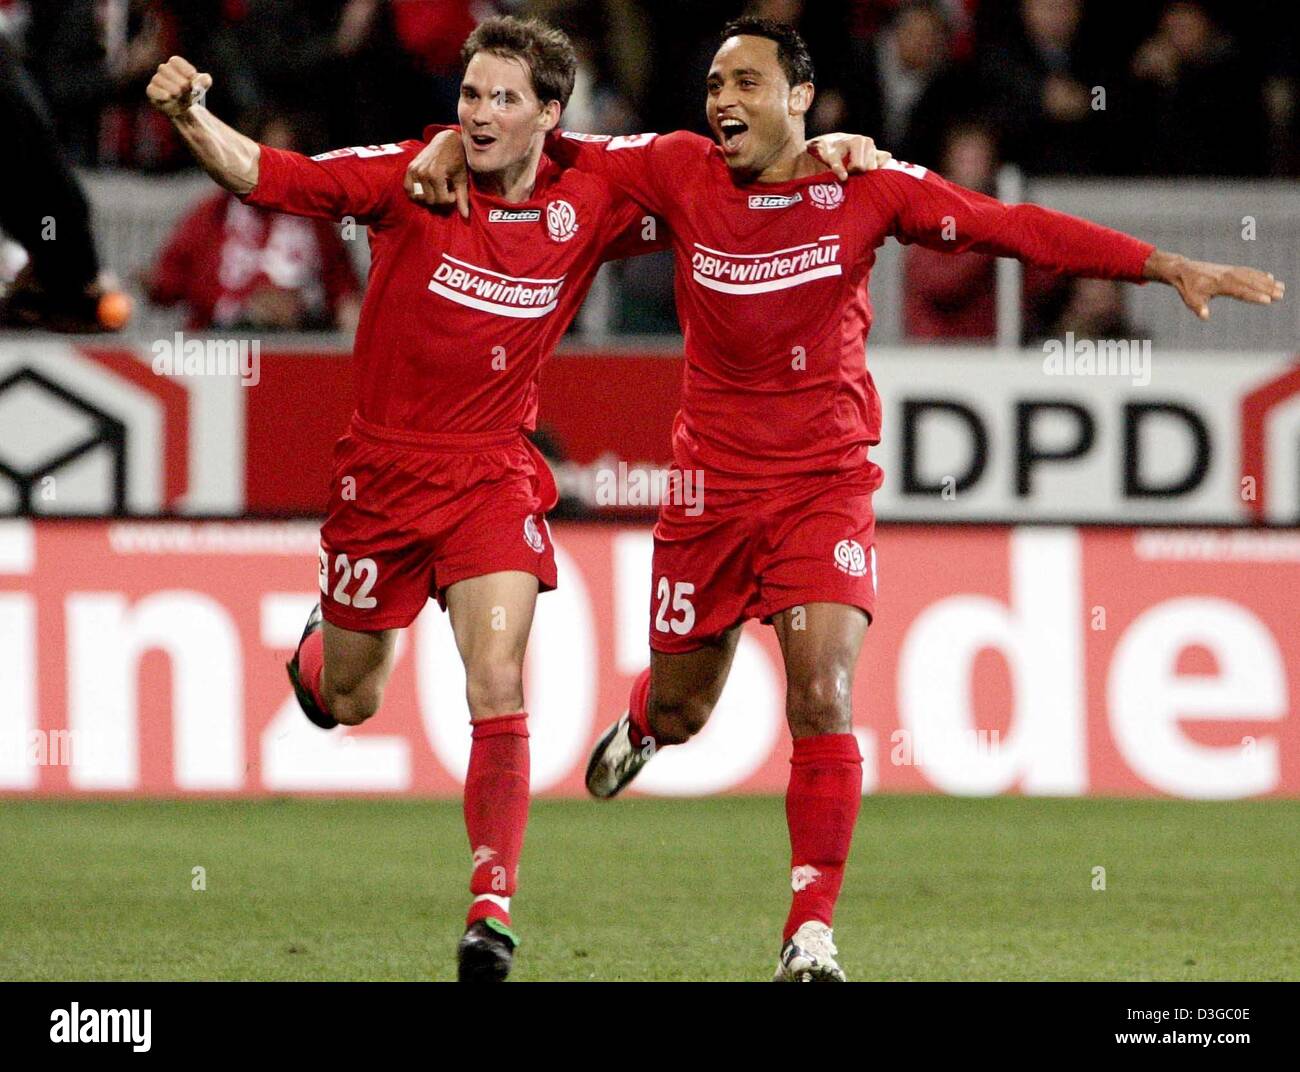 Dpa) - Torjäger Niclas Weiland (L) und Antonio da Silva, beide Spieler der  Fußball-Nationalmannschaft Mainz feiern nach dem 2: 0 Tor während des  Spiels gegen FSV Mainz 05 und FC Hansa Rostock